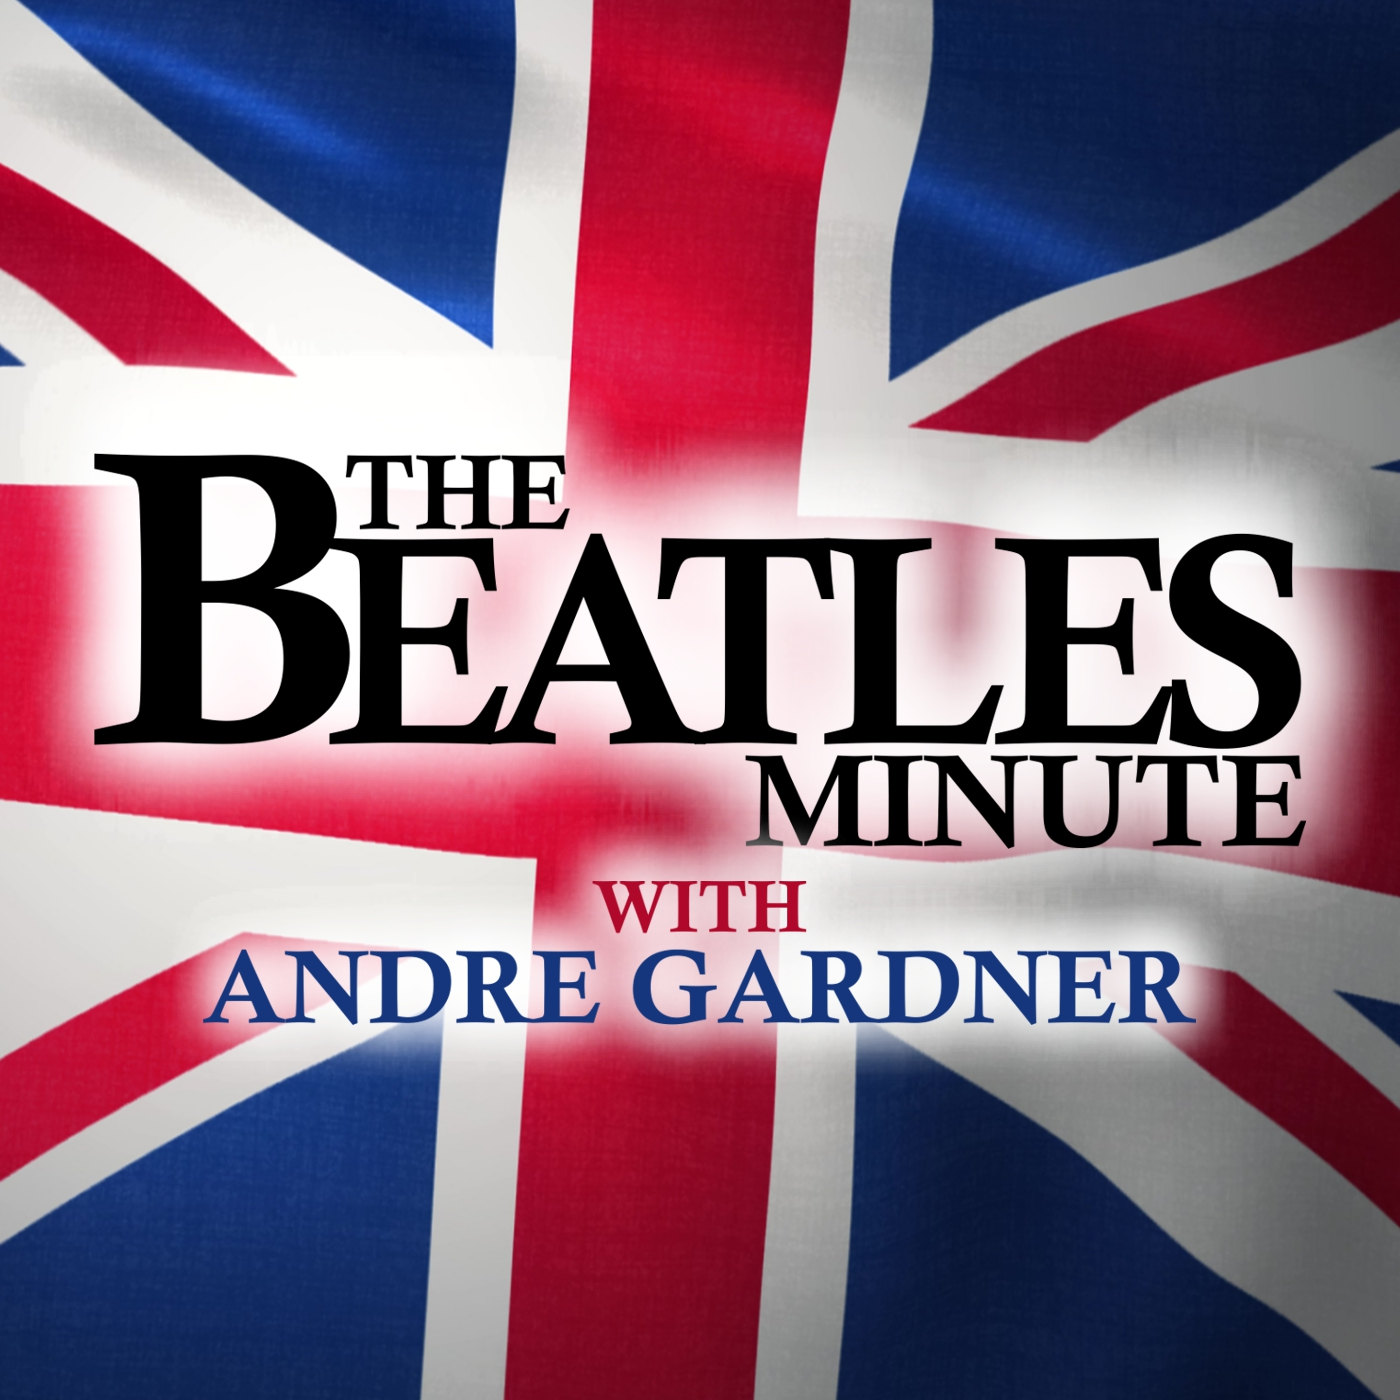 Beatles Minute - week of February 3, 2020